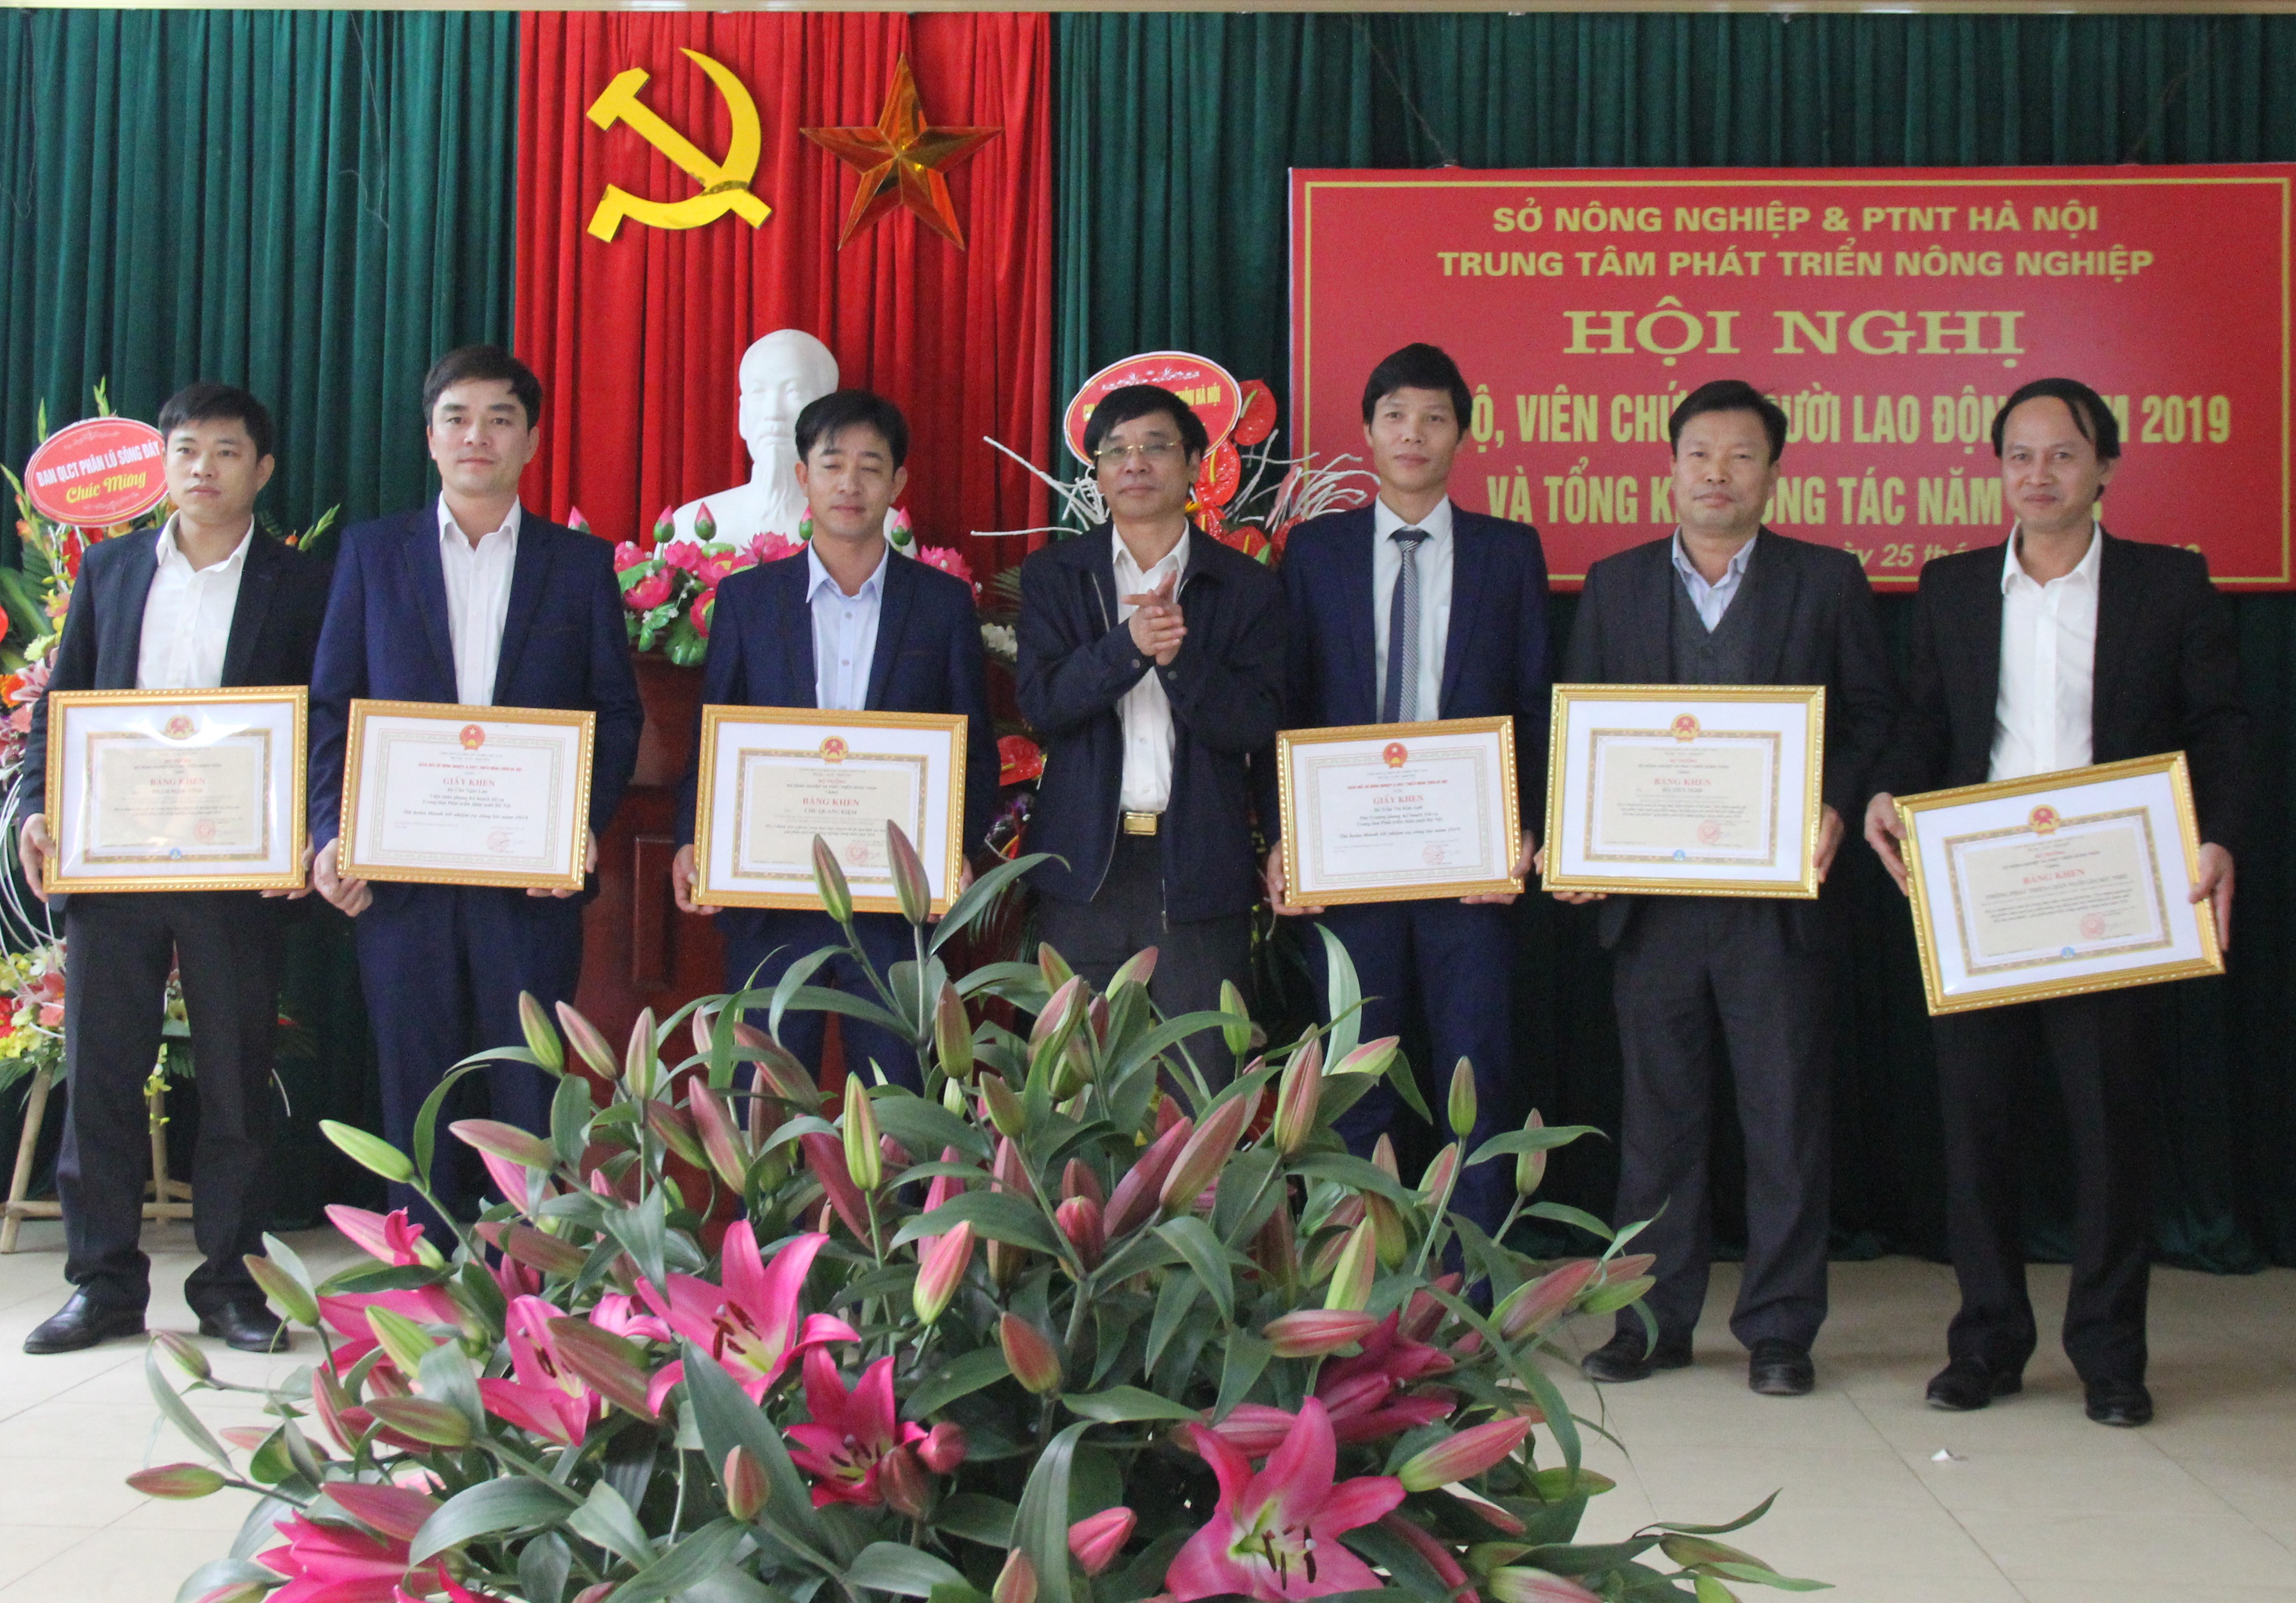 Trung tâm Phát triển Nông nghiệp Hà Nội tổng kết công tác năm 2018